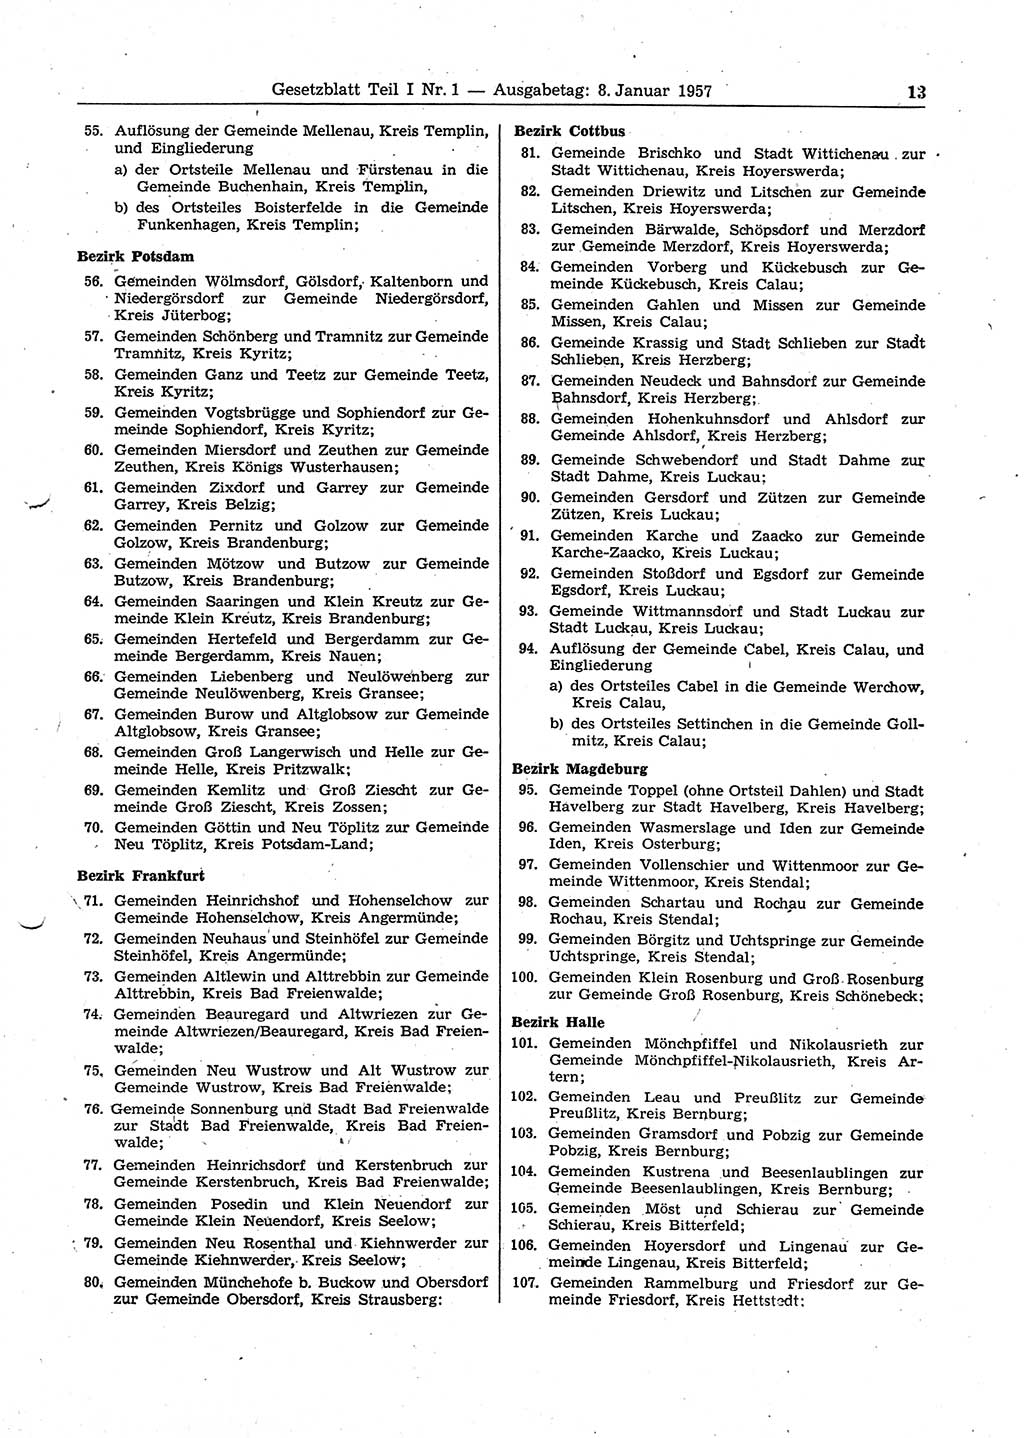 Gesetzblatt (GBl.) der Deutschen Demokratischen Republik (DDR) Teil Ⅰ 1957, Seite 13 (GBl. DDR Ⅰ 1957, S. 13)